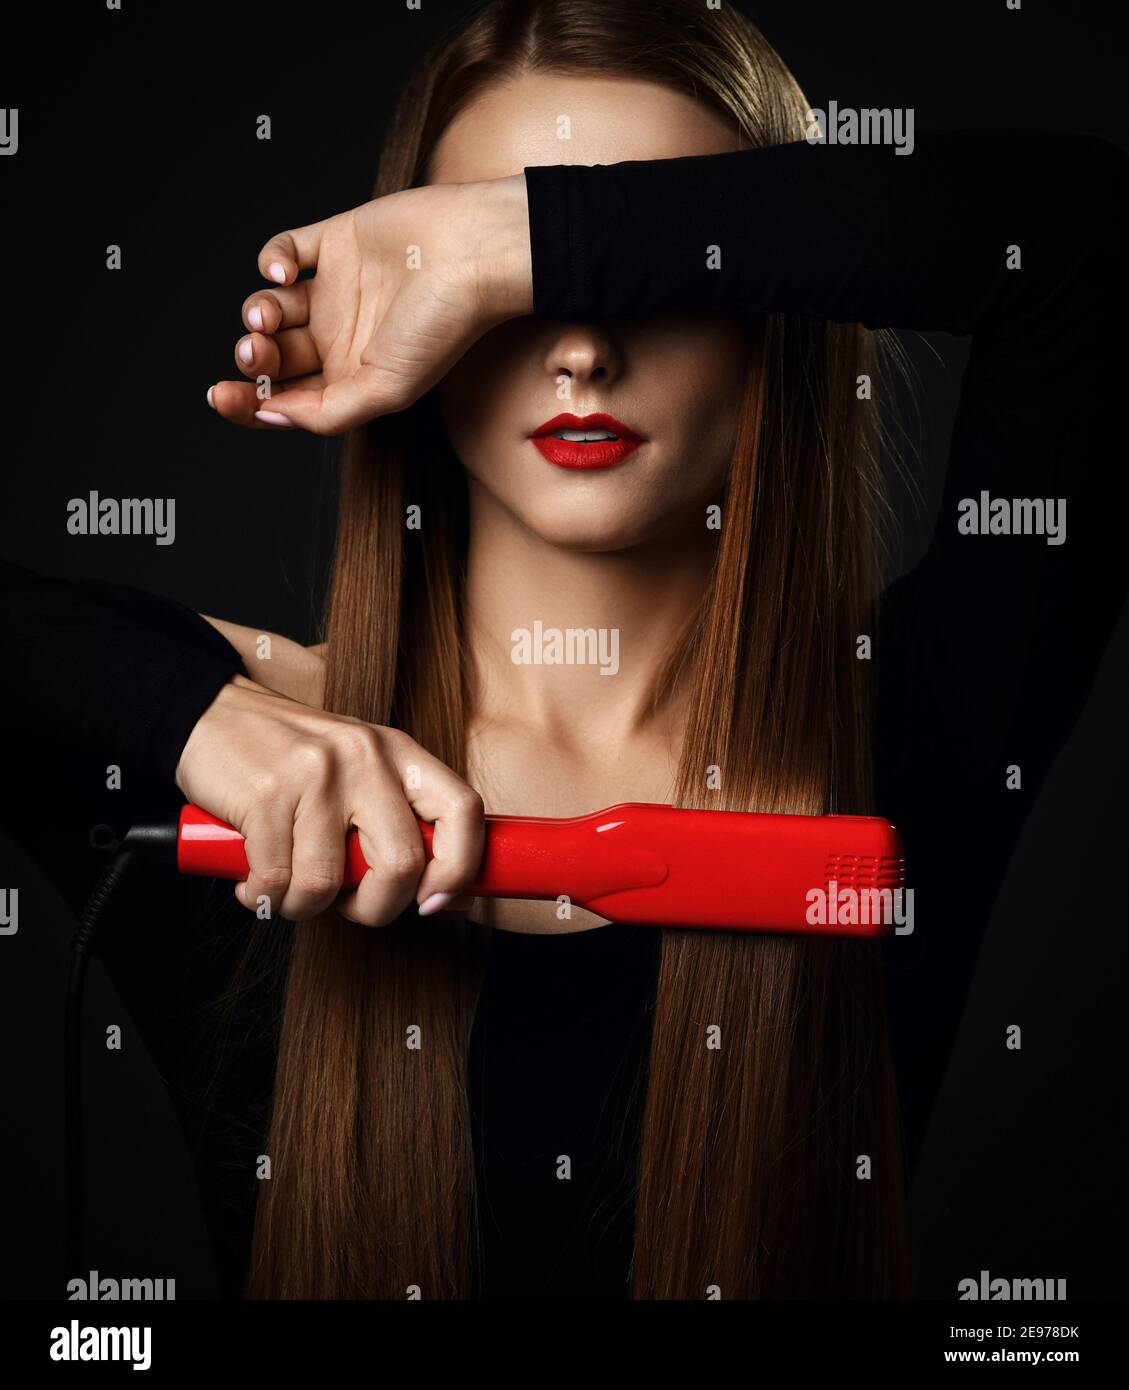 Jeune jolie femme avec de longs cheveux soyeux dans des vêtements noirs utilise un lisseur rouge et couvre les yeux de l'autre main Banque D'Images